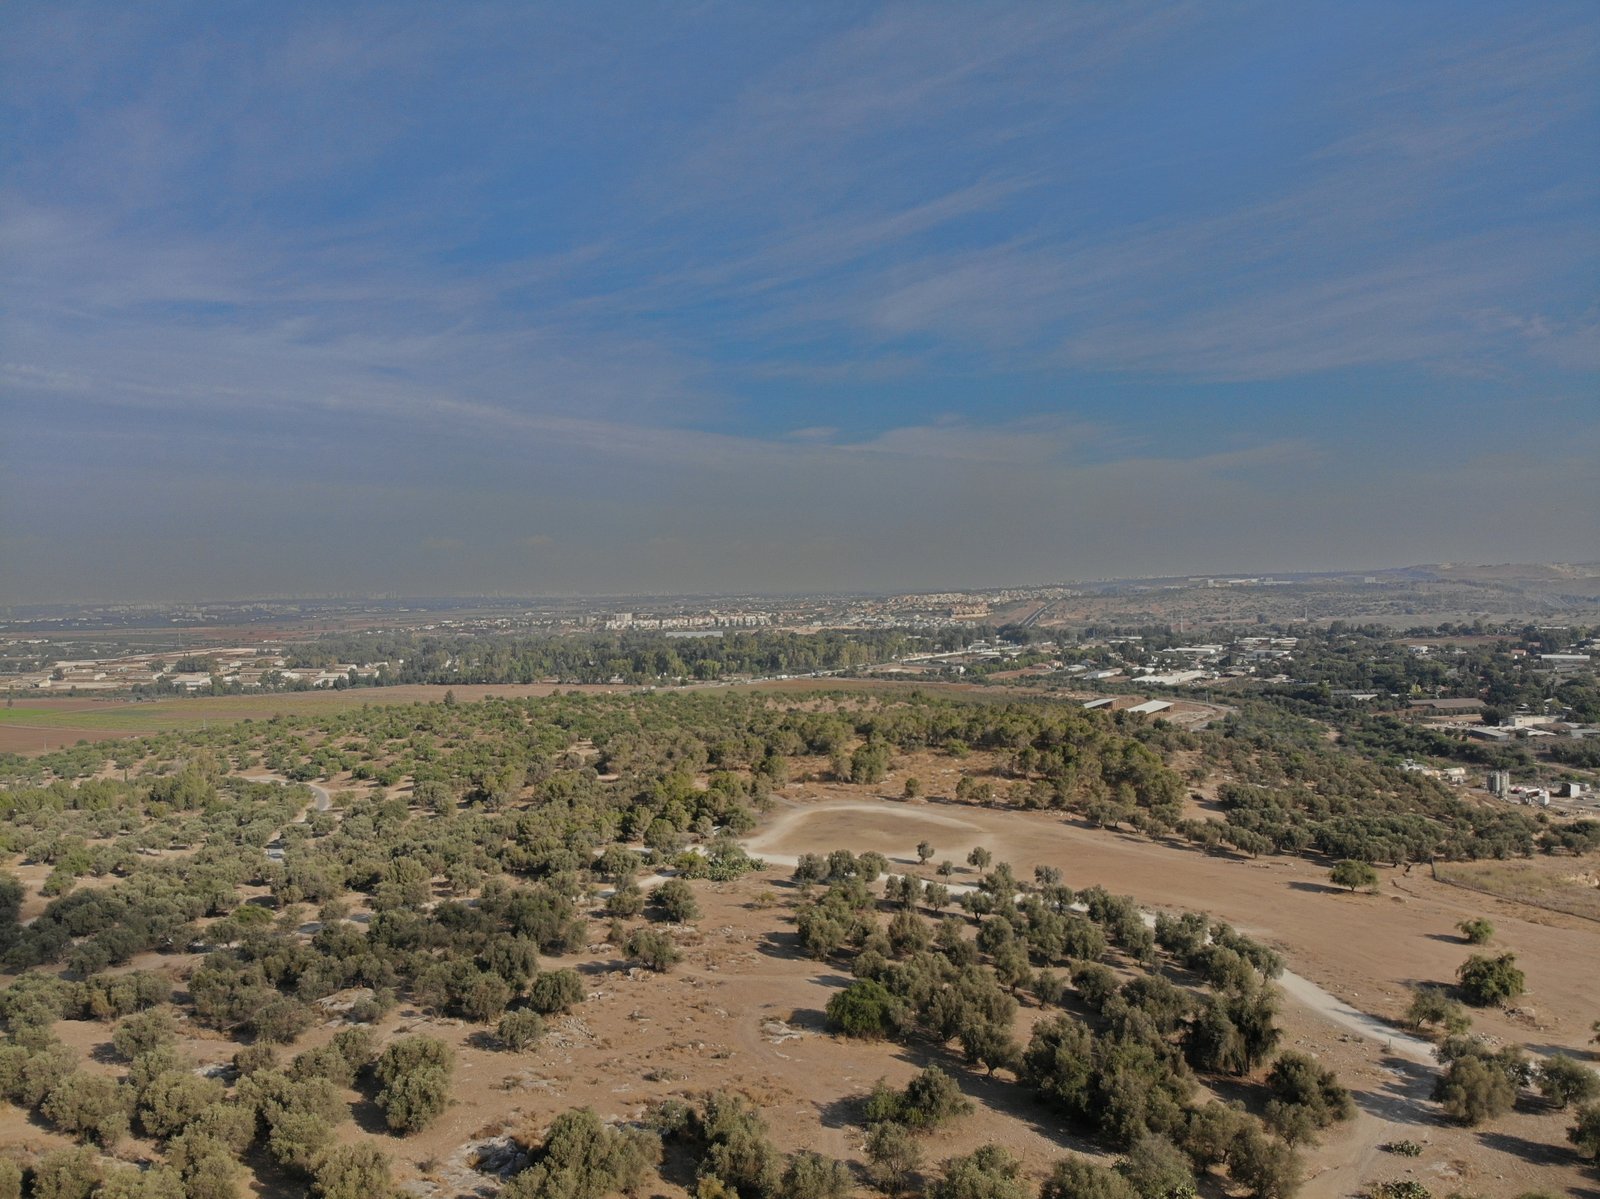 Ancient Tell Hadid and Judaa Hills, Israel